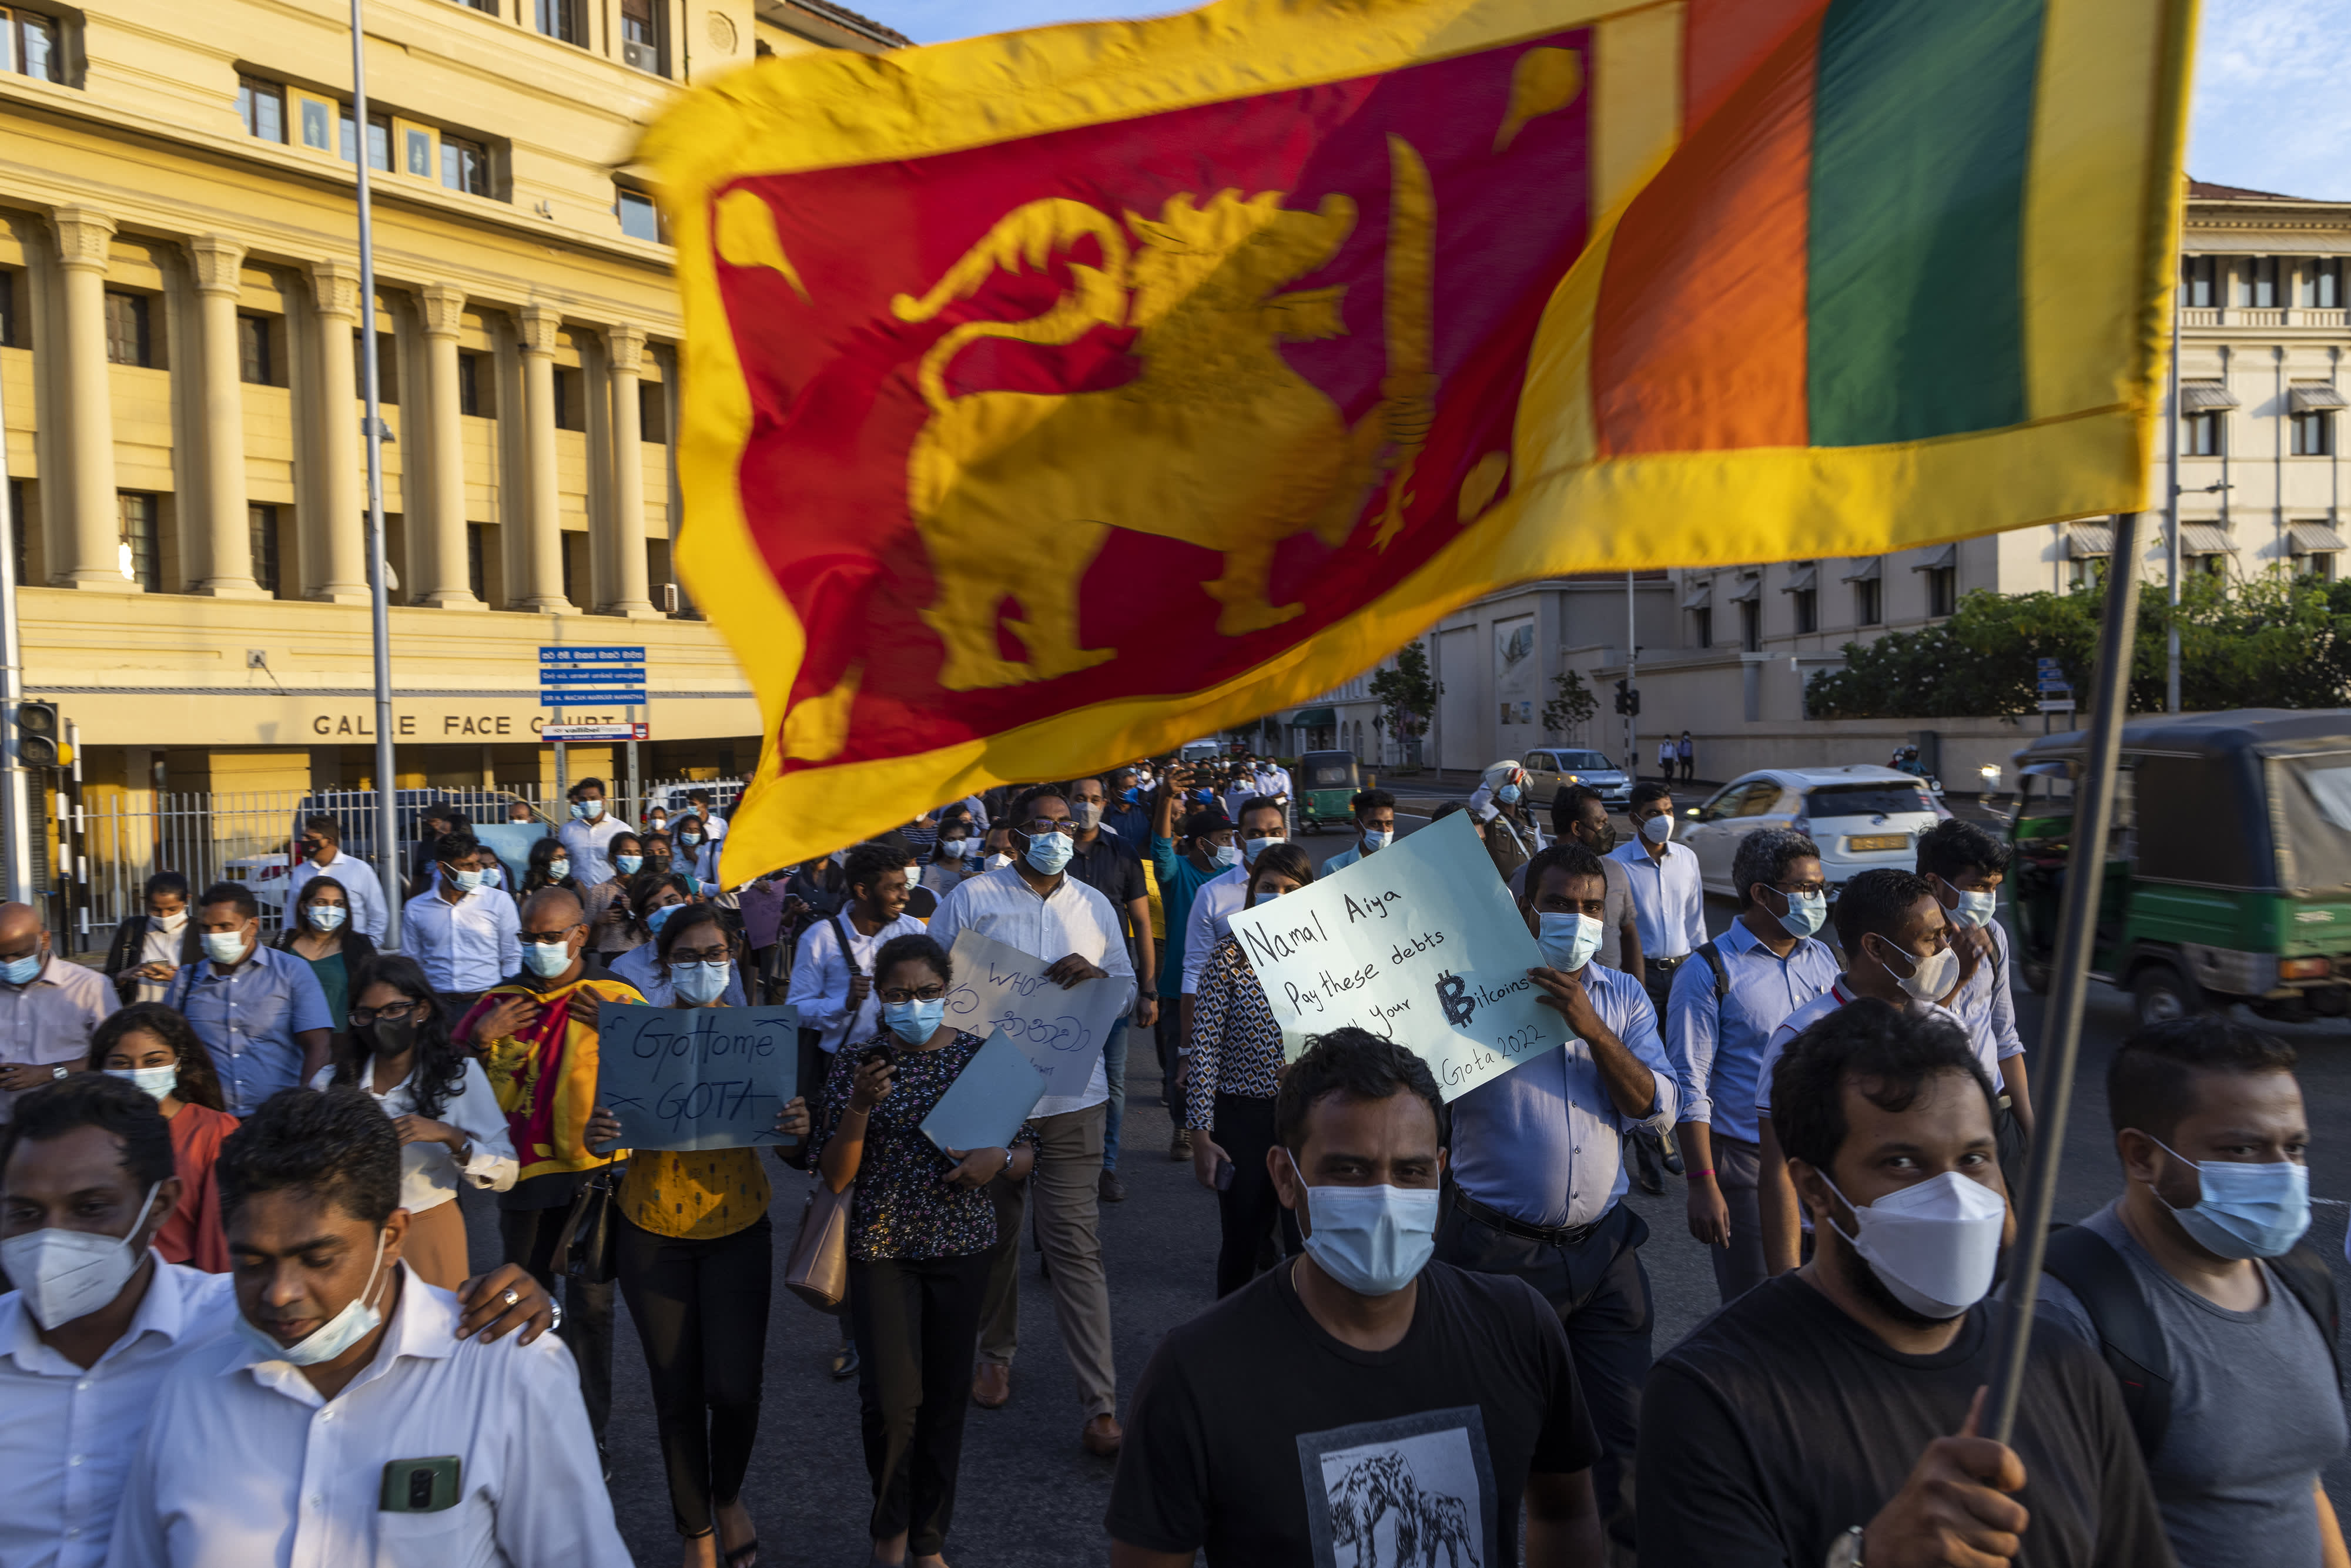 De professor zegt dat Sri Lanka institutionele veranderingen nodig heeft om de schuld op de lange termijn houdbaar te maken